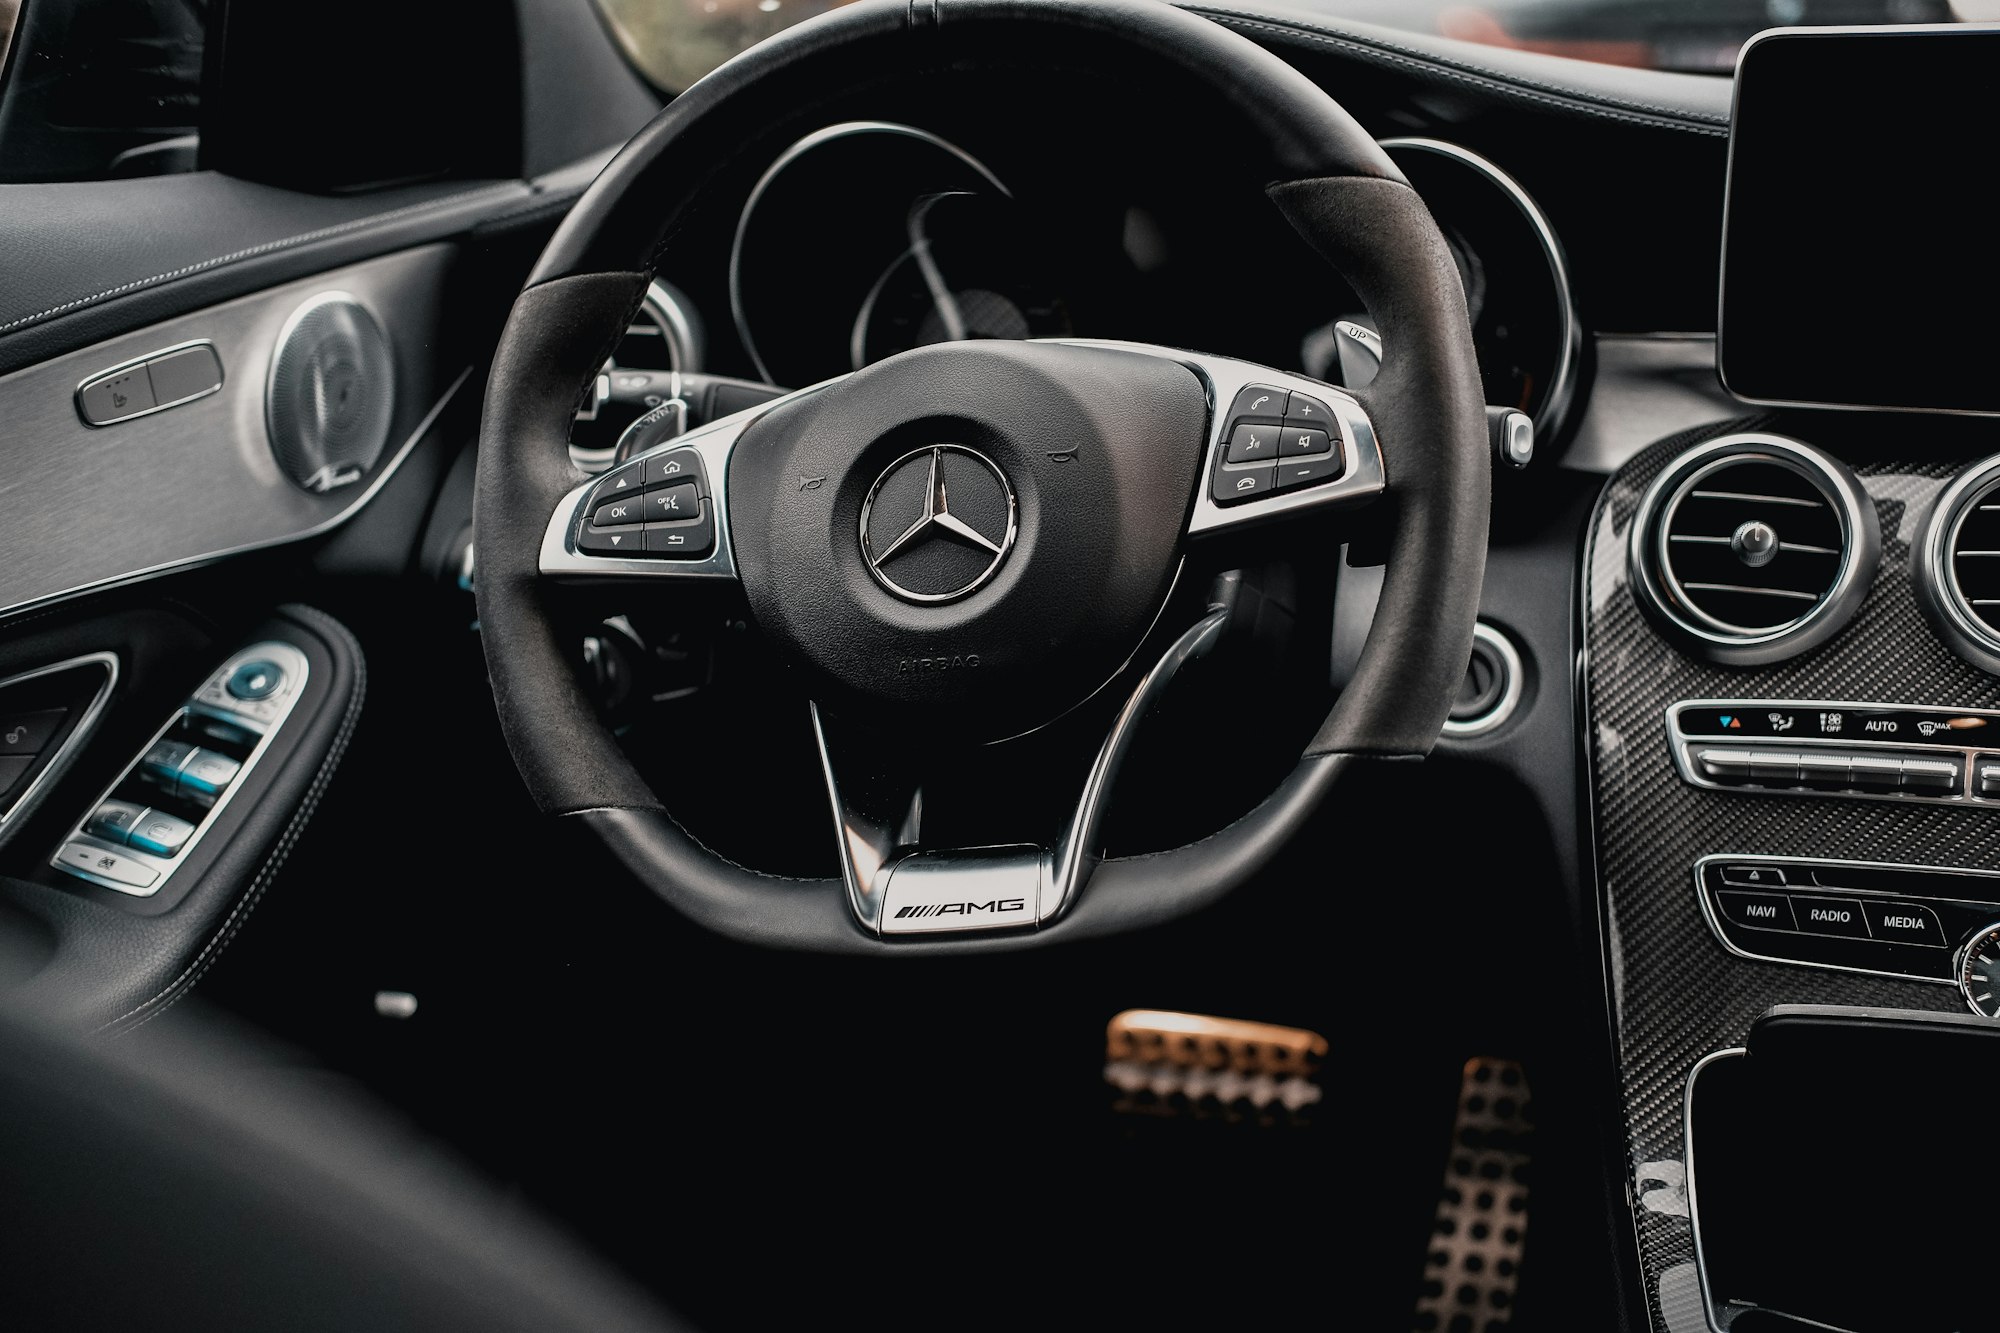 Mercedes-Benz recalls almost 1 million cars over brake system concerns